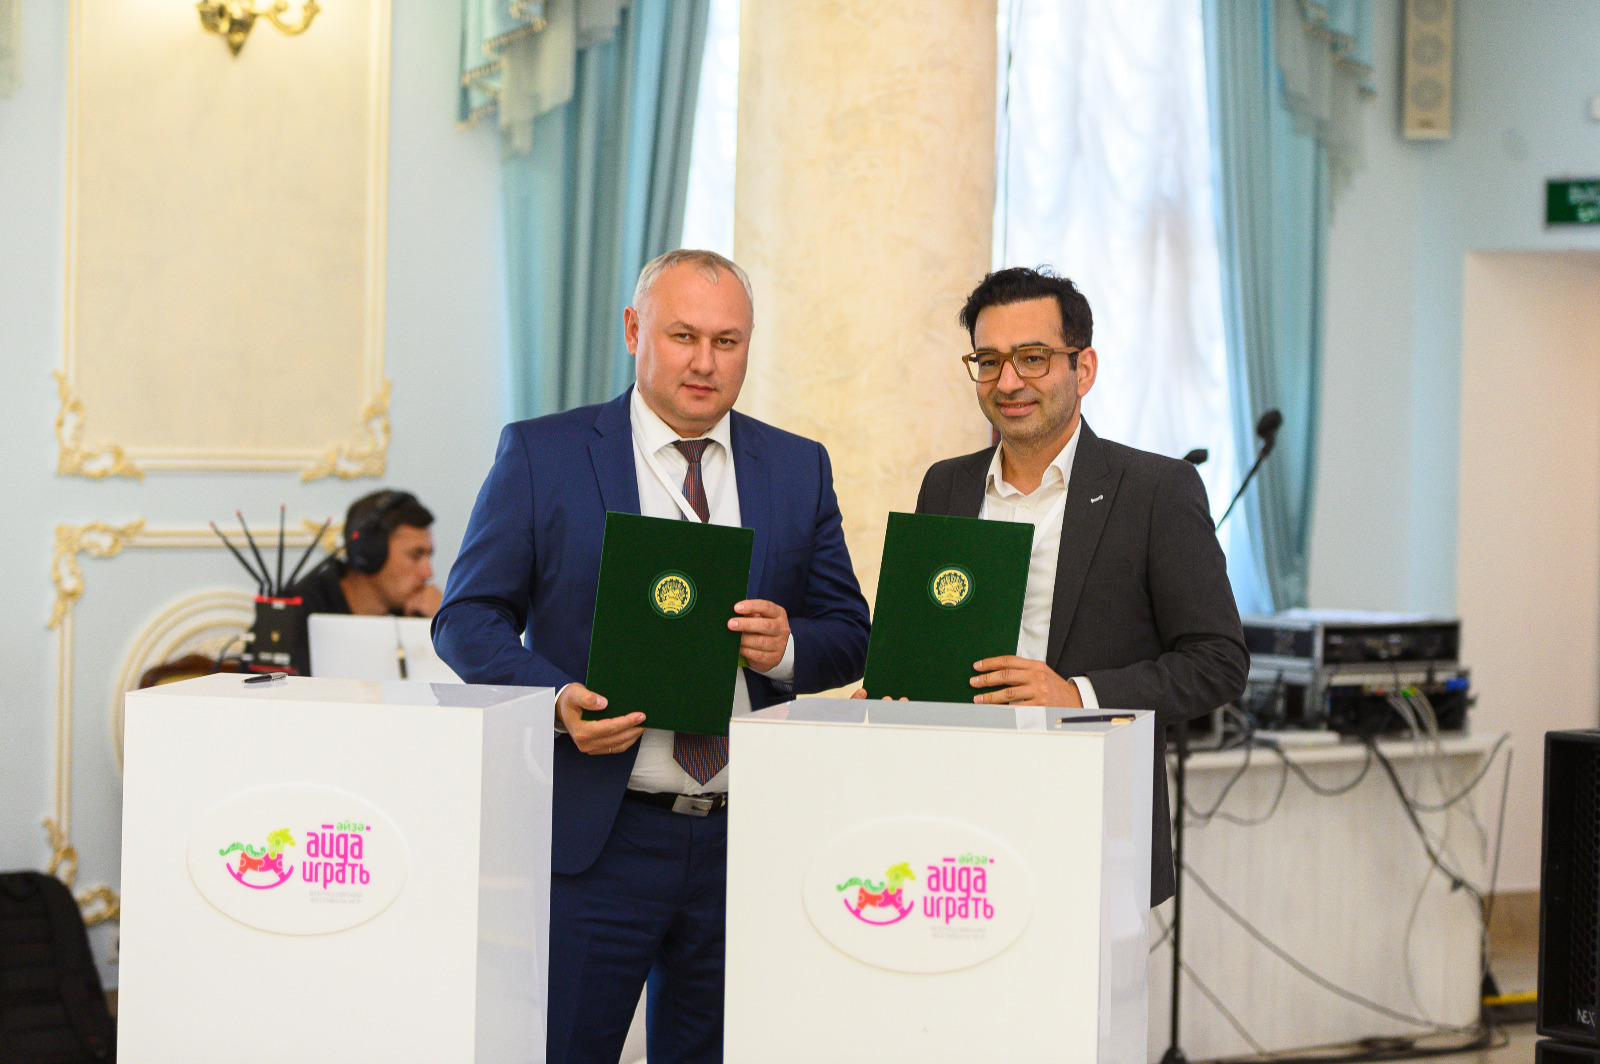 предоставлено организаторами фестиваля В Башкирии на фестивале «Айда играть» подписано три соглашения